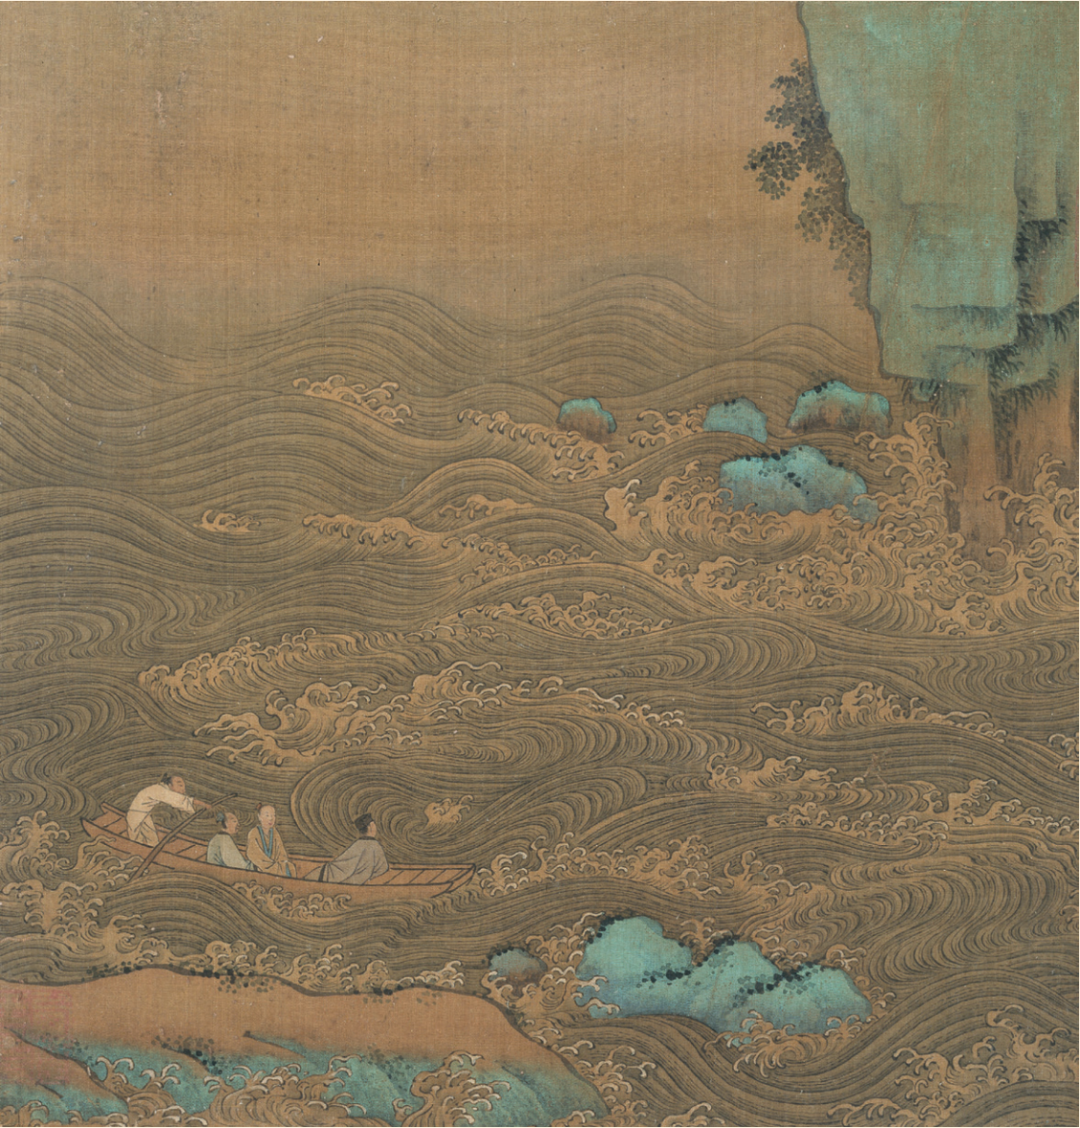 2020年故宮博物院推出的“千古風流人物——故宮博物院藏蘇轼主題書(shū)畫特展”展出的宋人《赤壁圖》